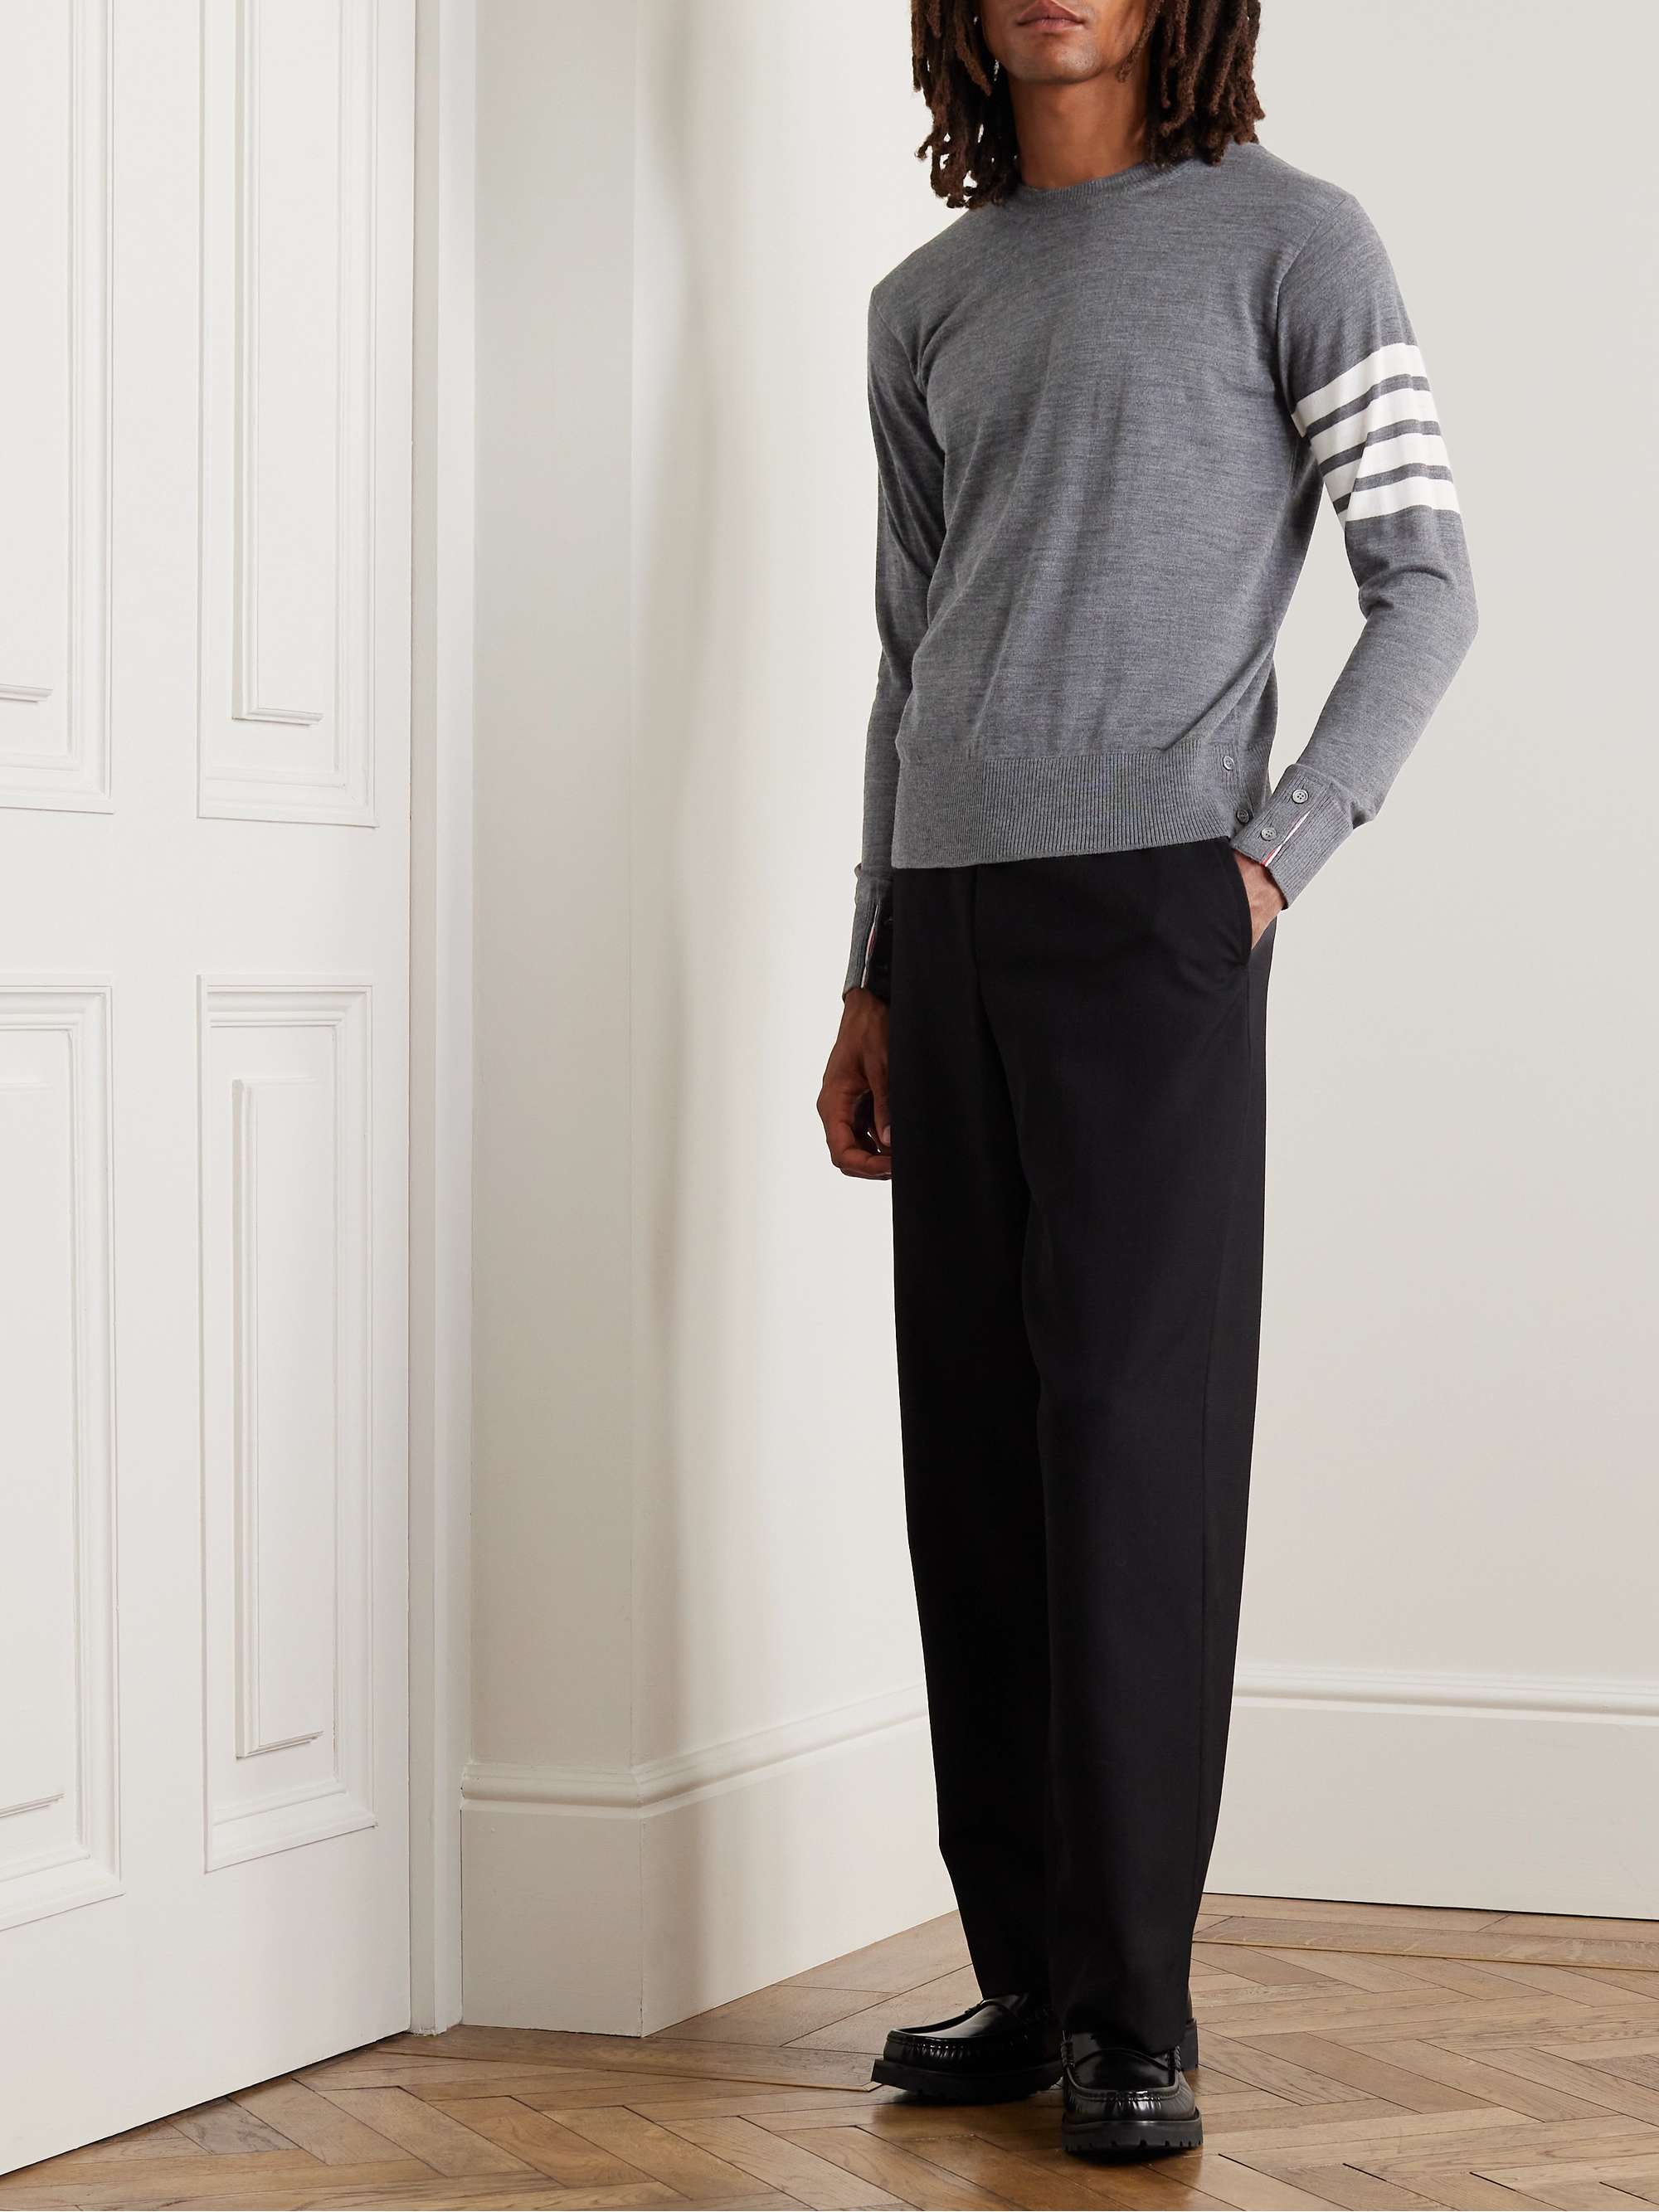 ポスターフレーム ピーター・ミラー メンズ ニット・セーター アウター Long Bay Stripe Merino Wool  Linen  Quarter Zip Sweater 通販